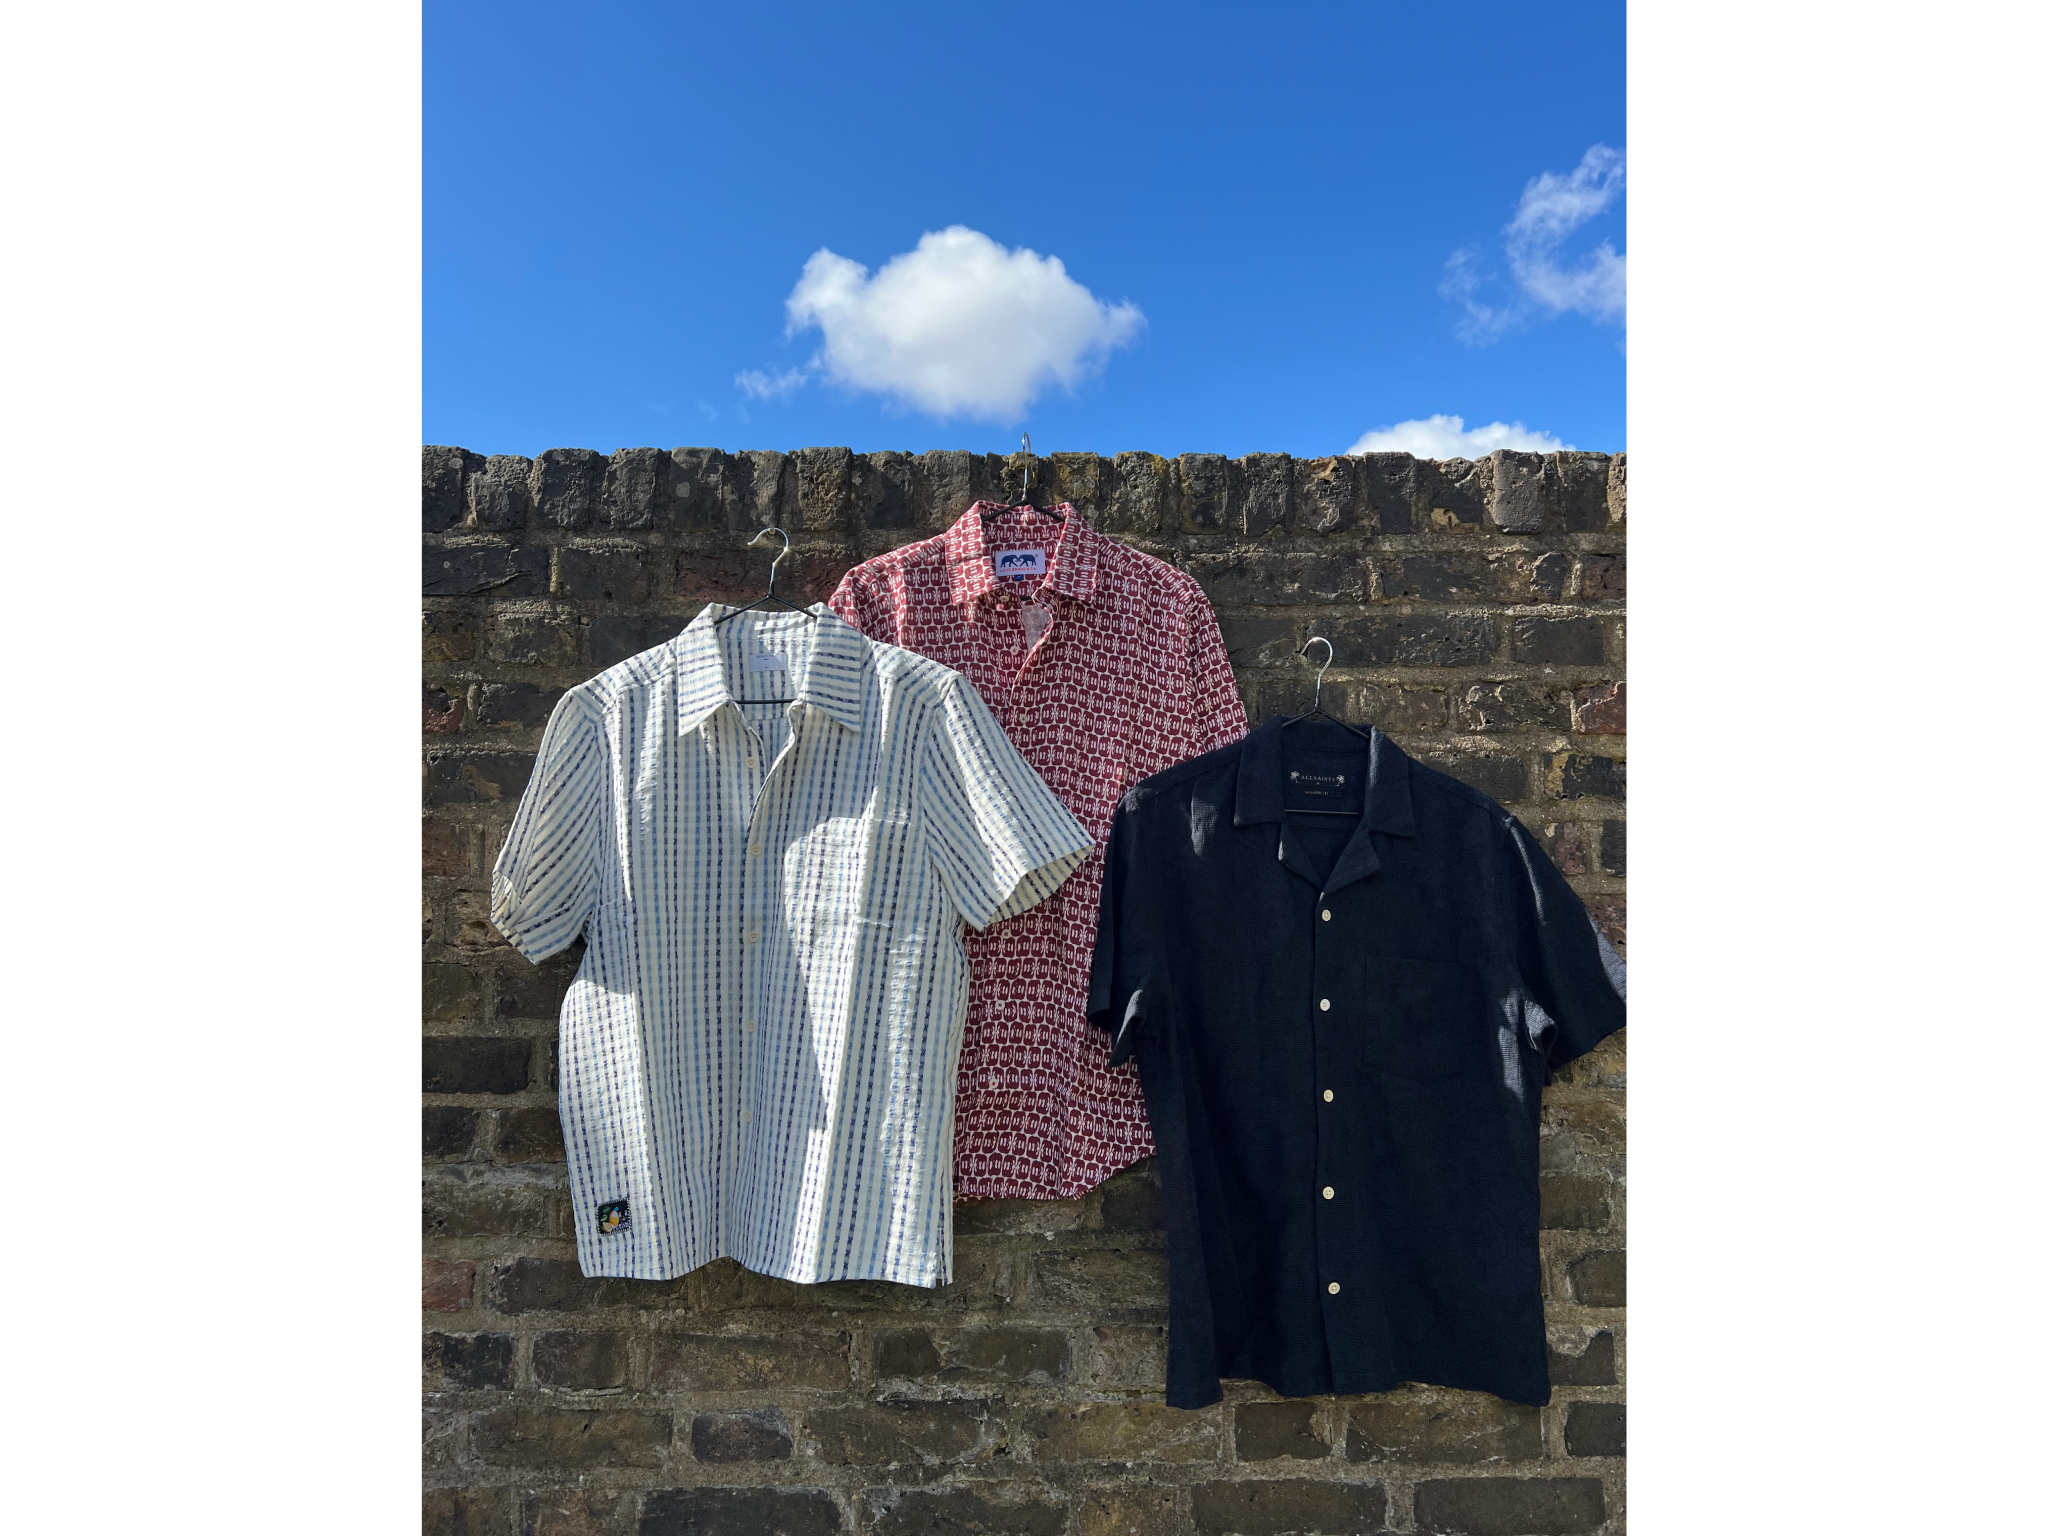 We’ve reviewed a range of summer shirts for men